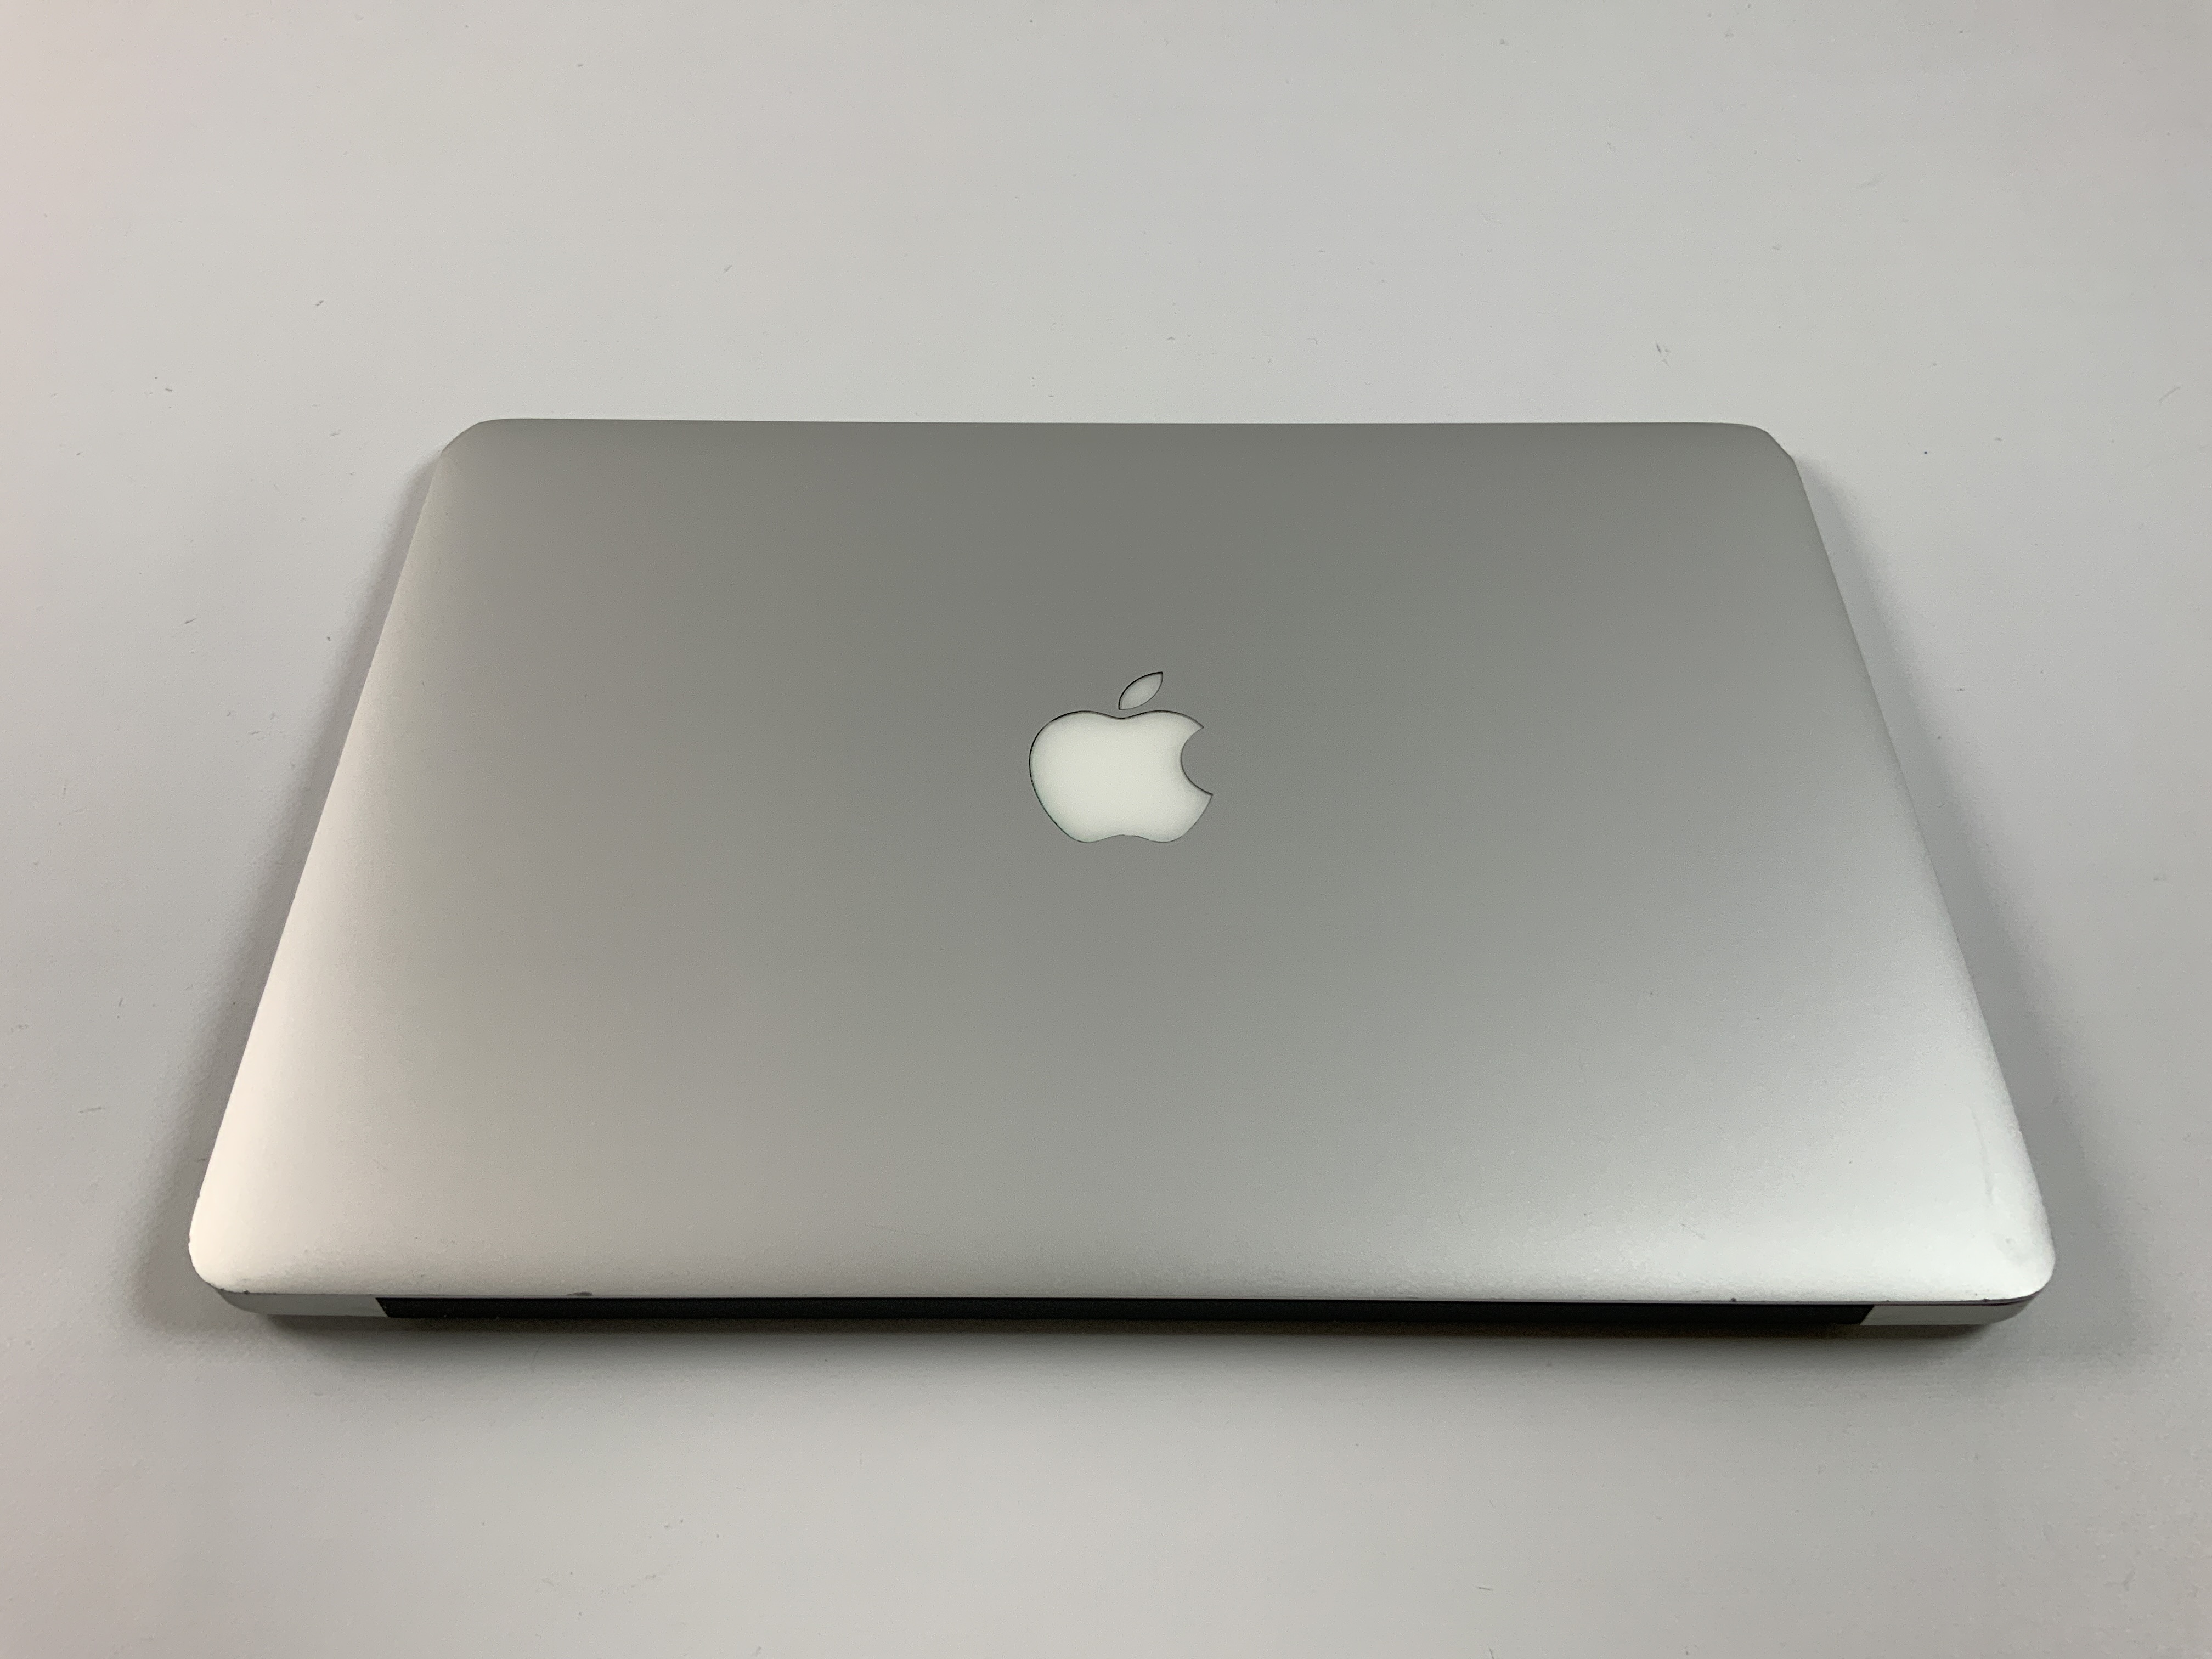 MacBook Air 13" Mid 2017 (Intel Core i5 1.8 GHz 8 GB RAM 128 GB SSD), Intel Core i5 1.8 GHz, 8 GB RAM, 128 GB SSD, Bild 3